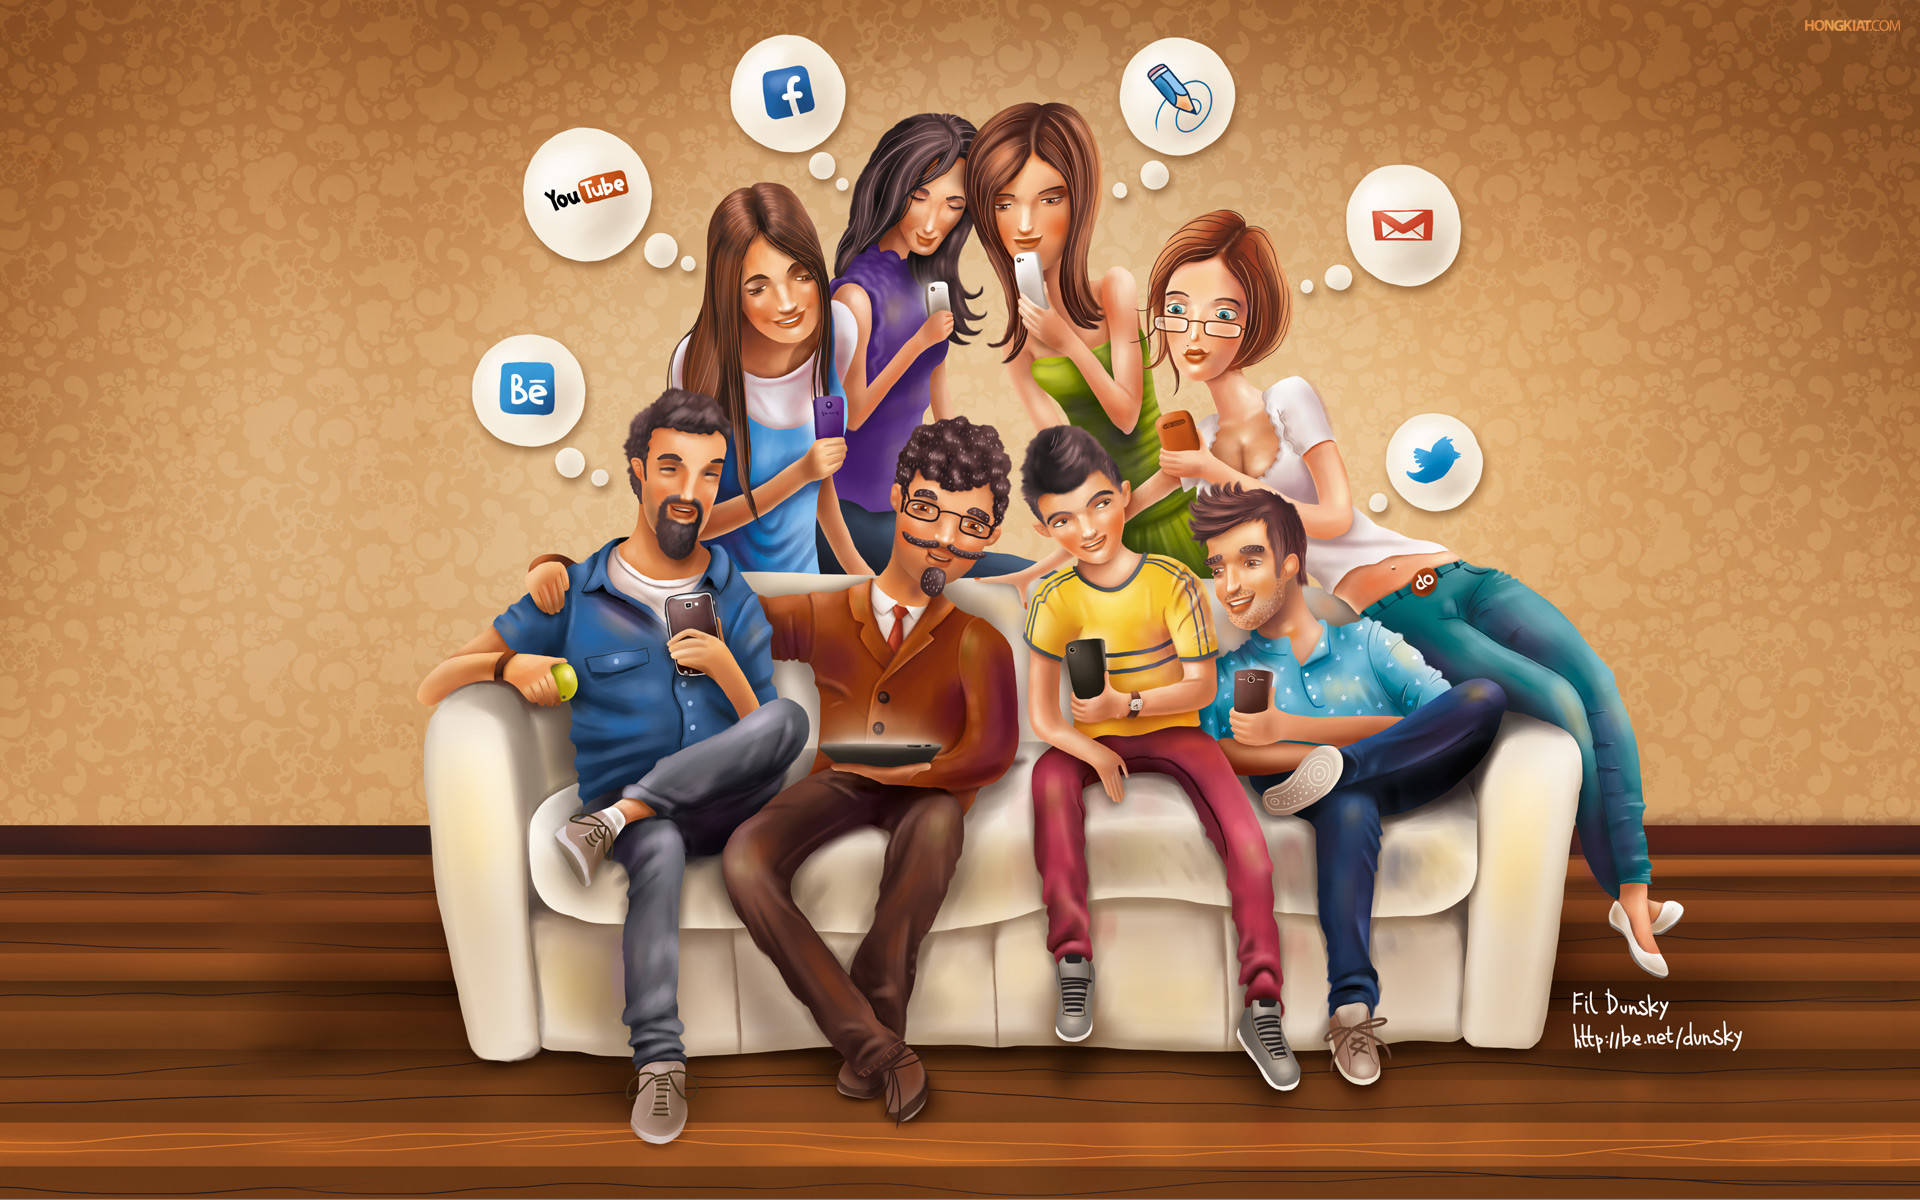 Sociale Medier Mennesker På En Sofa Wallpaper